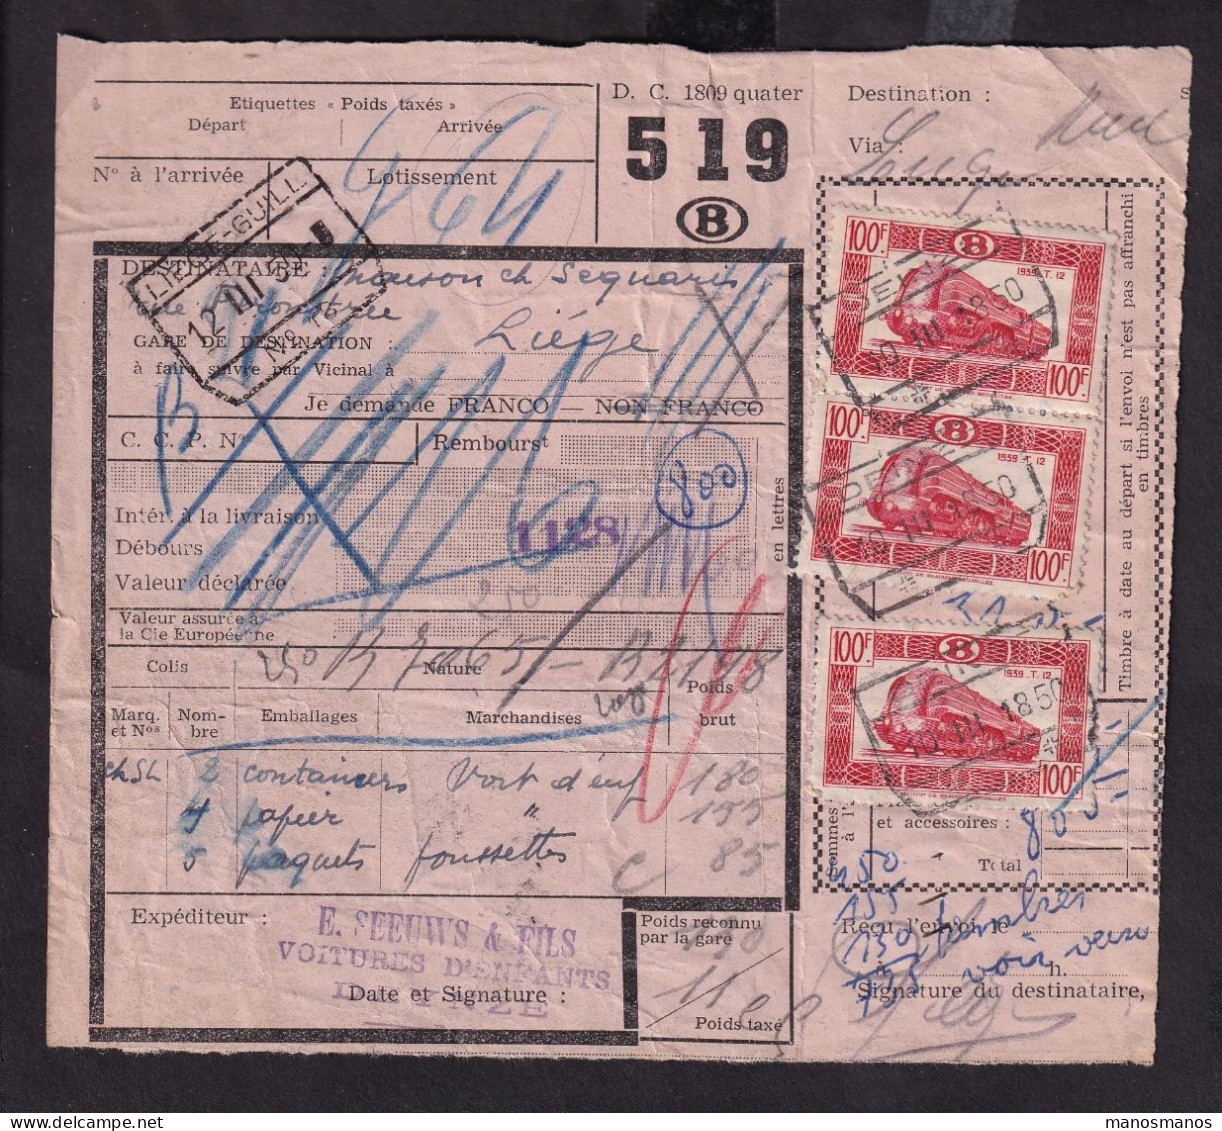 DDFF 165 - Timbres Chemin De Fer En MULTIPLES - 8 X 100 F - S/ Bulletin D'Expédition - DEINZE 1950 - Documents & Fragments